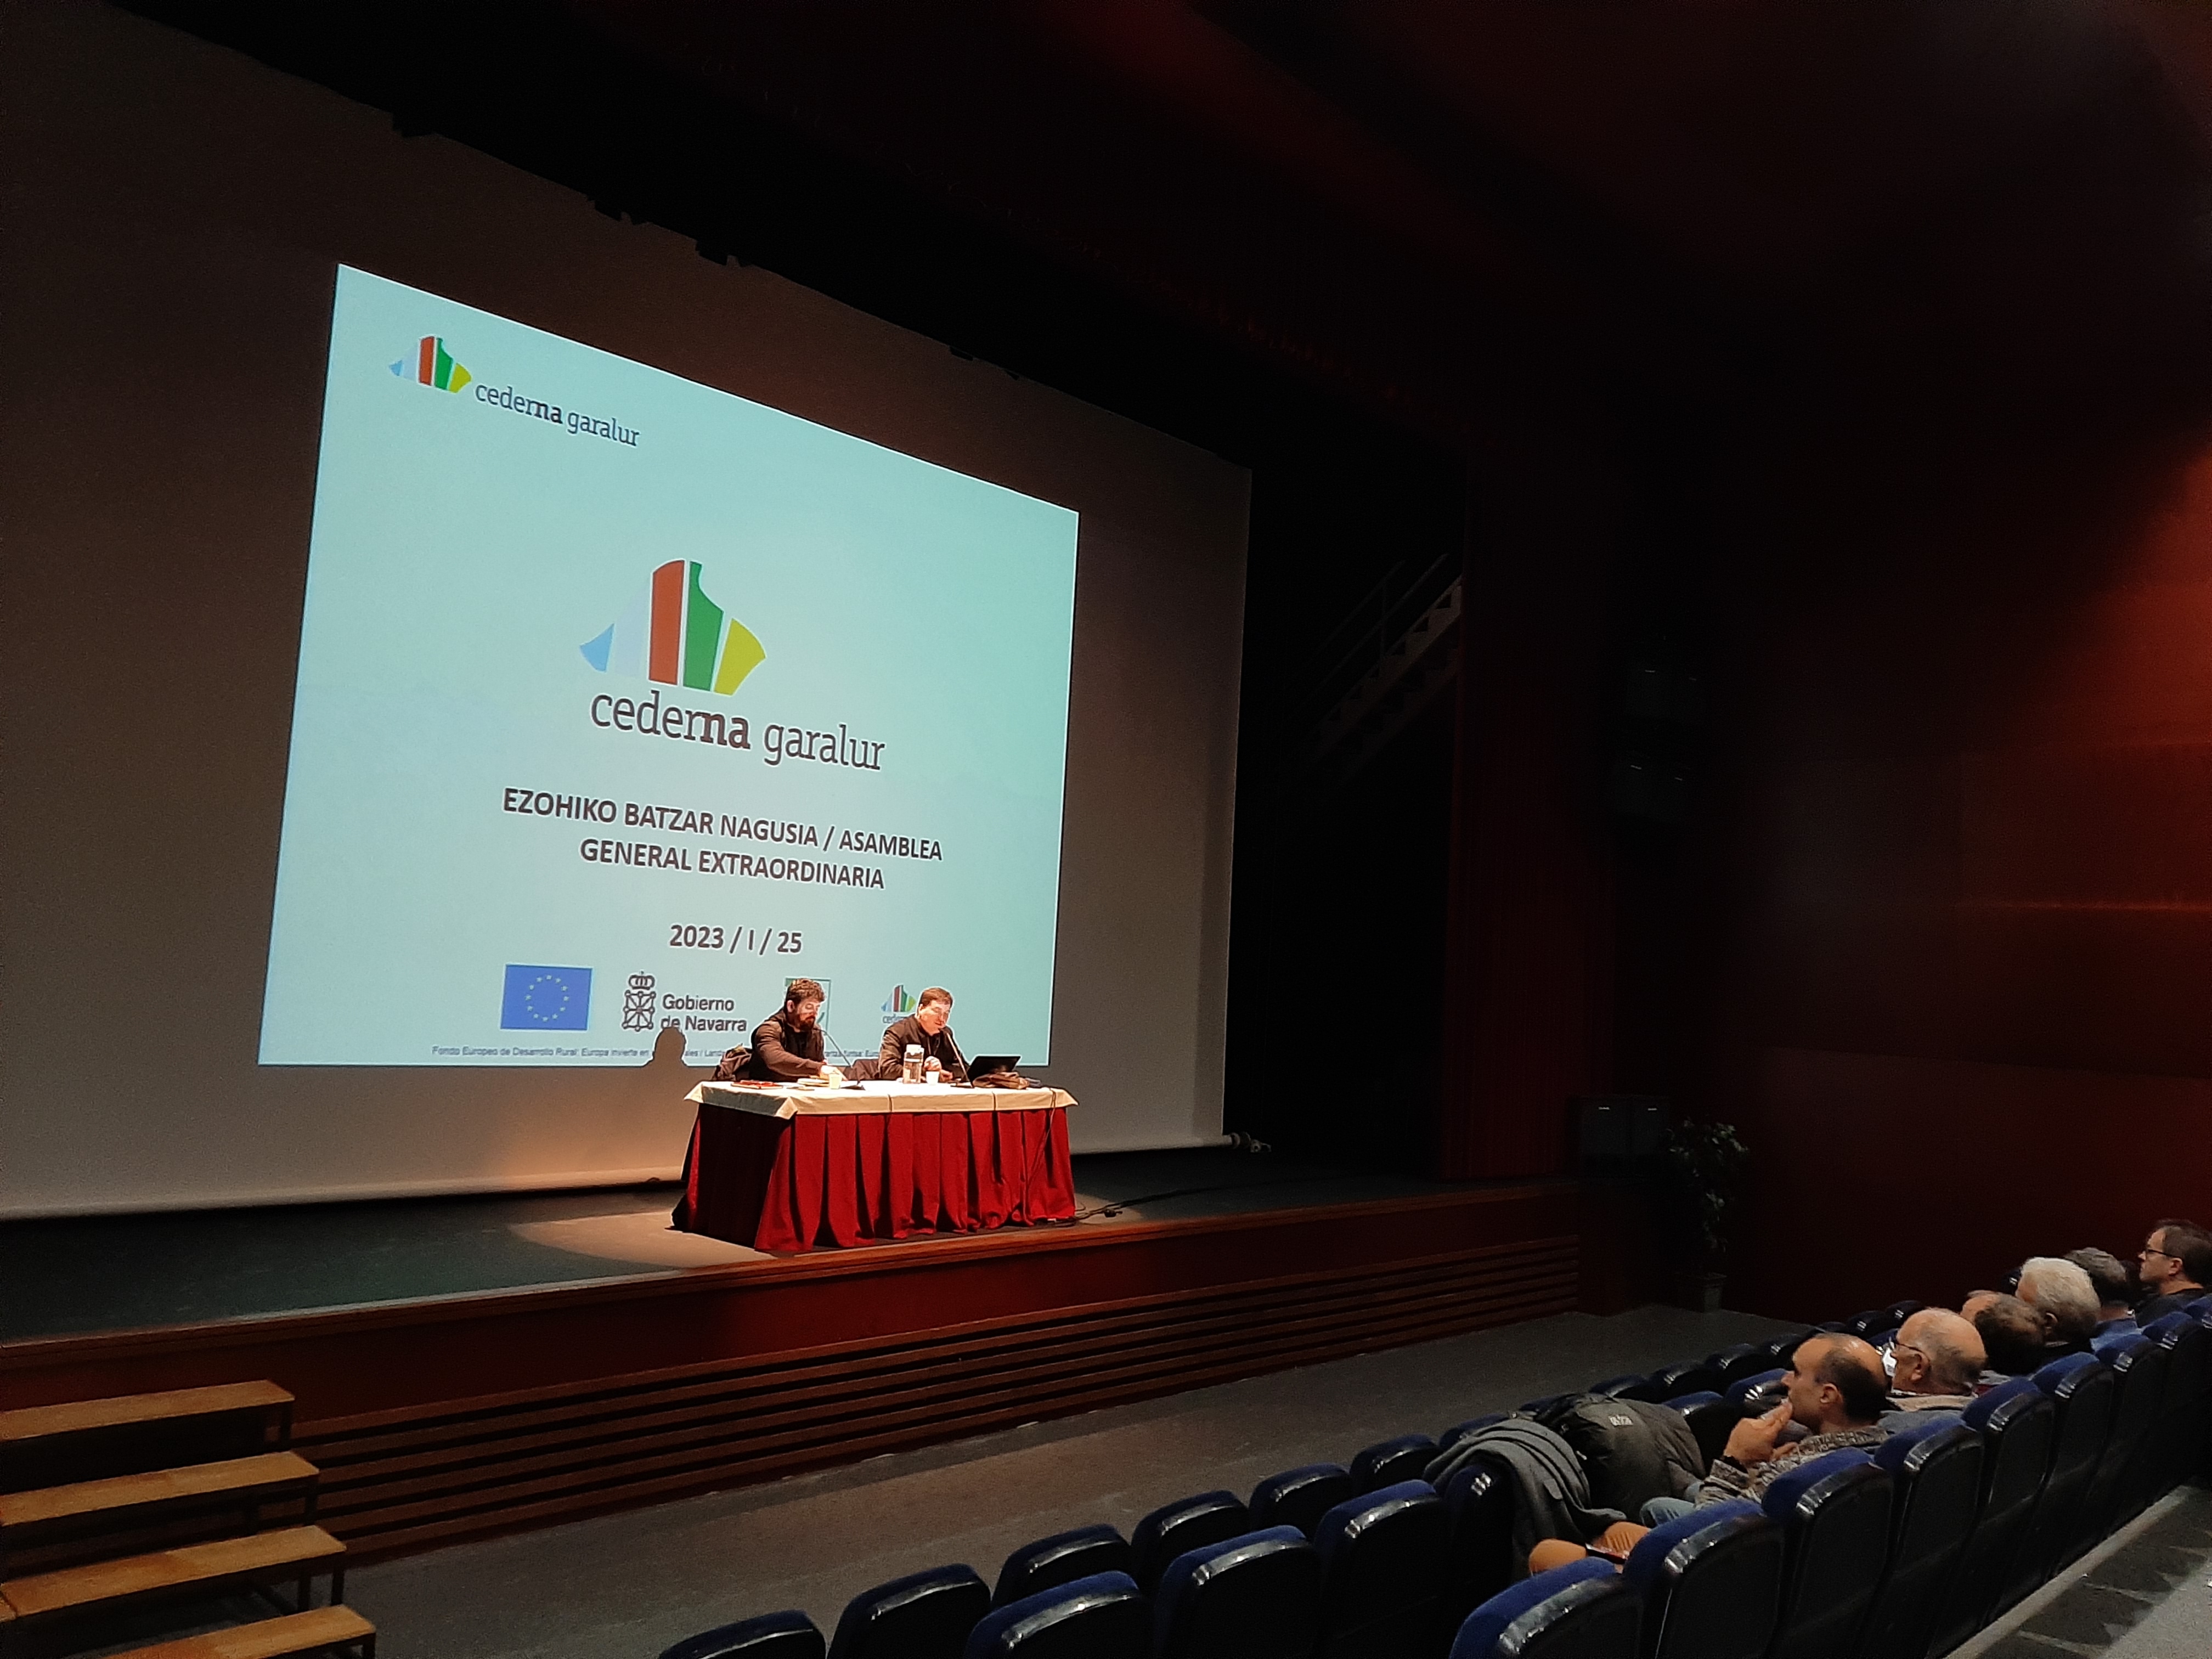 Cederna Garalur aprueba su estrategia de desarrollo local para la Montaña de Navarra para el período 2023-2027.